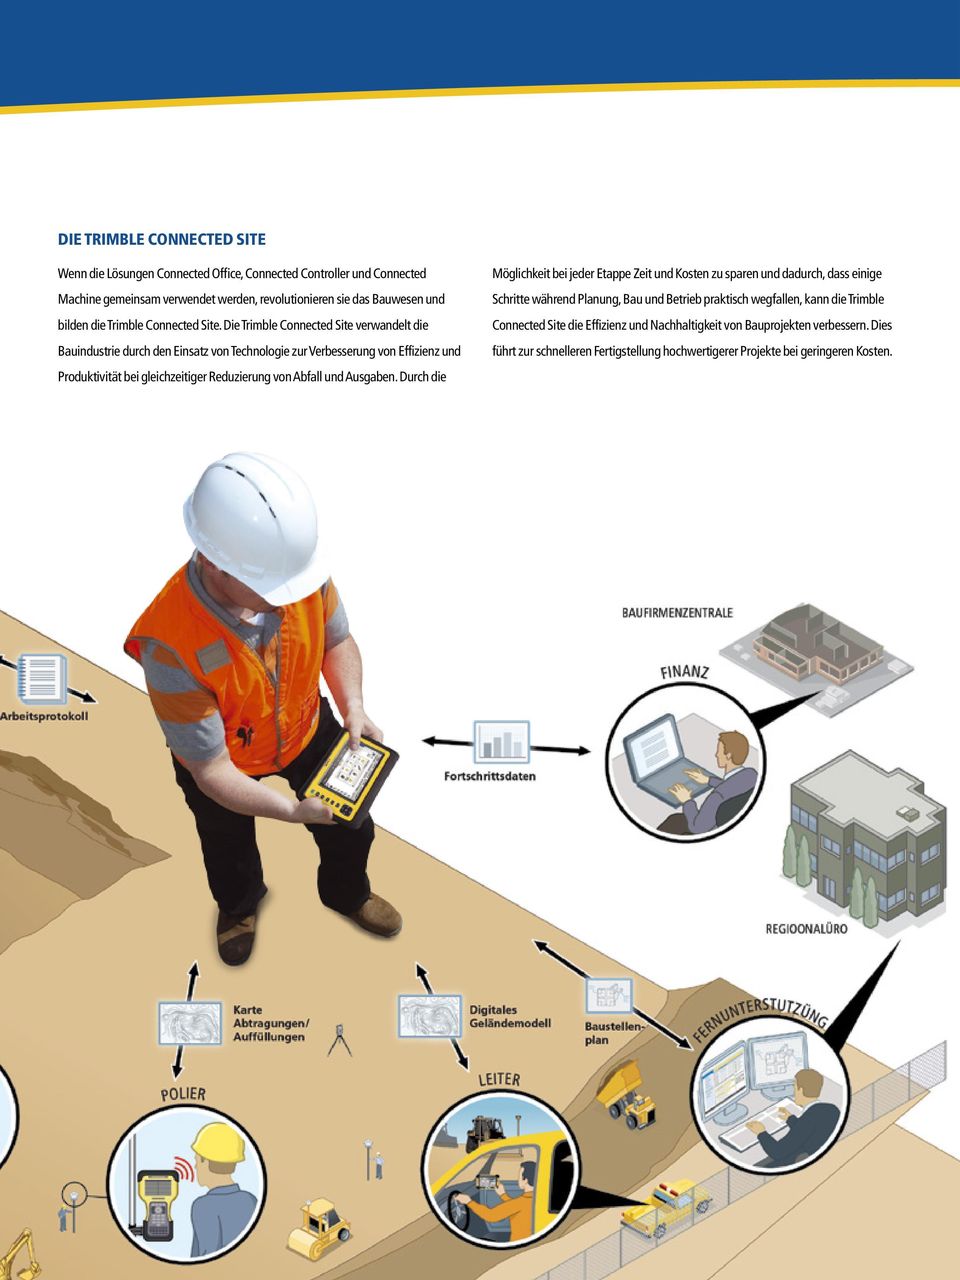 Die Trimble Connected Site verwandelt die Bauindustrie durch den Einsatz von Technologie zur Verbesserung von Effizienz und Produktivität bei gleichzeitiger Reduzierung von Abfall und